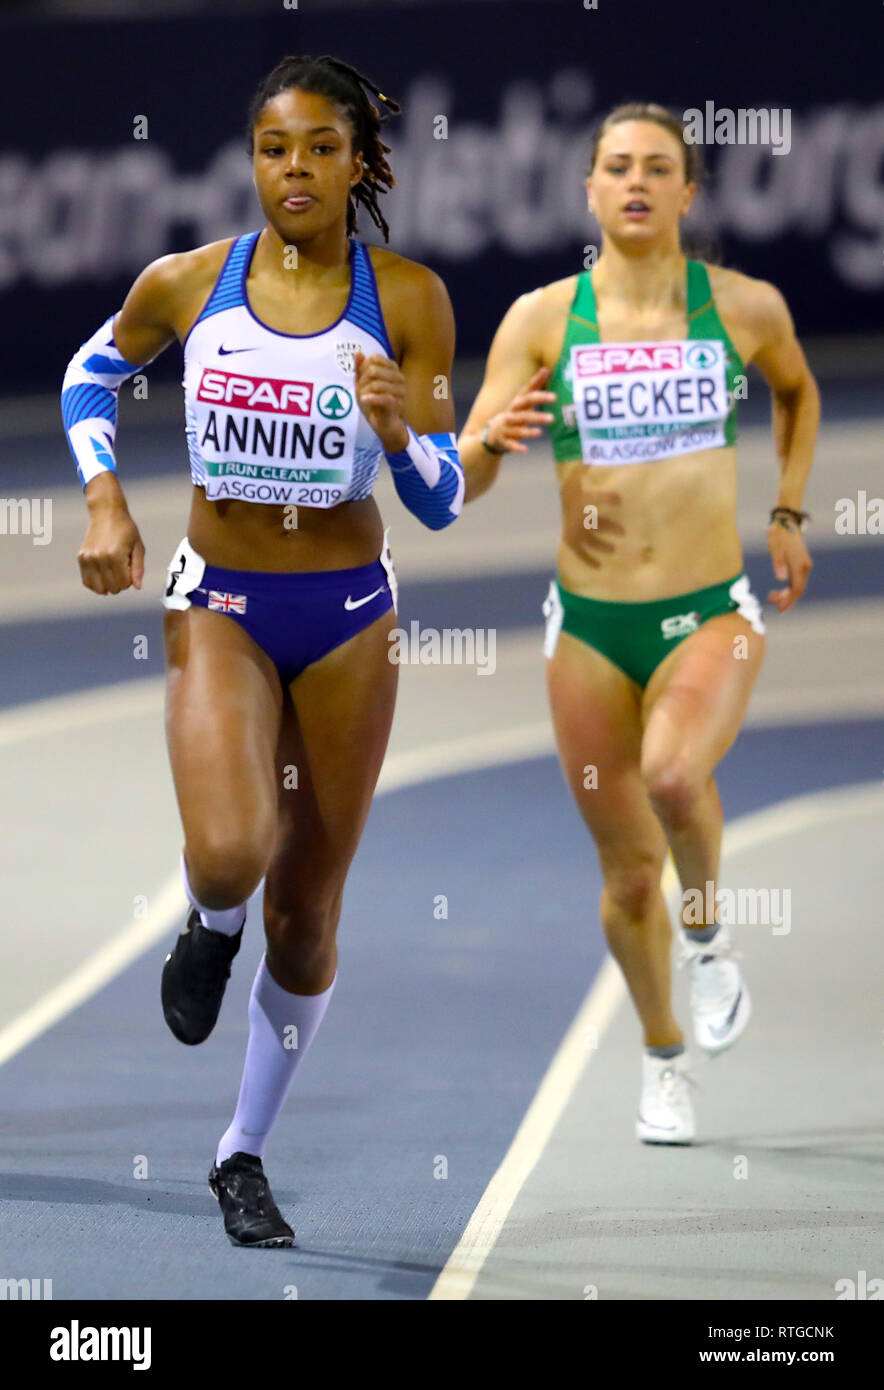 Ambre de la Grande-Bretagne Anning est concurrentiel dans le Women's 400m 2 au cours de la première journée de l'Indoor d'athlétisme à l'Emirates Arena, Glasgow. Banque D'Images